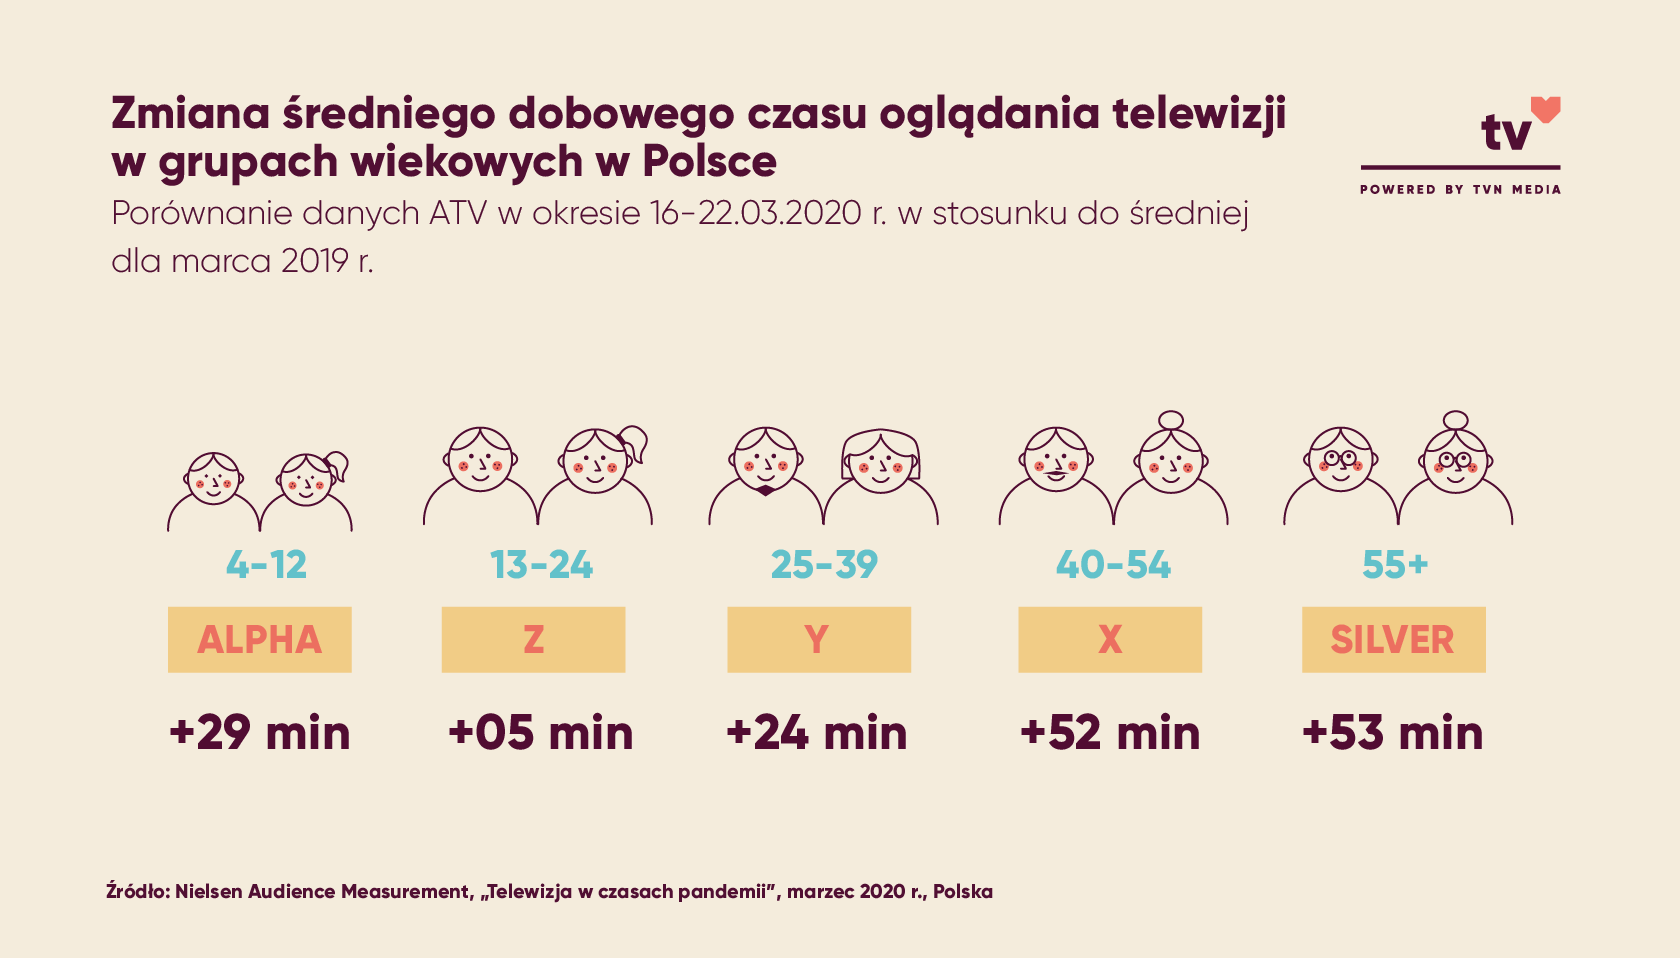 Zmiana średniego dobowego czasu oglądania telewizji w grupach wiekowych w Polsce